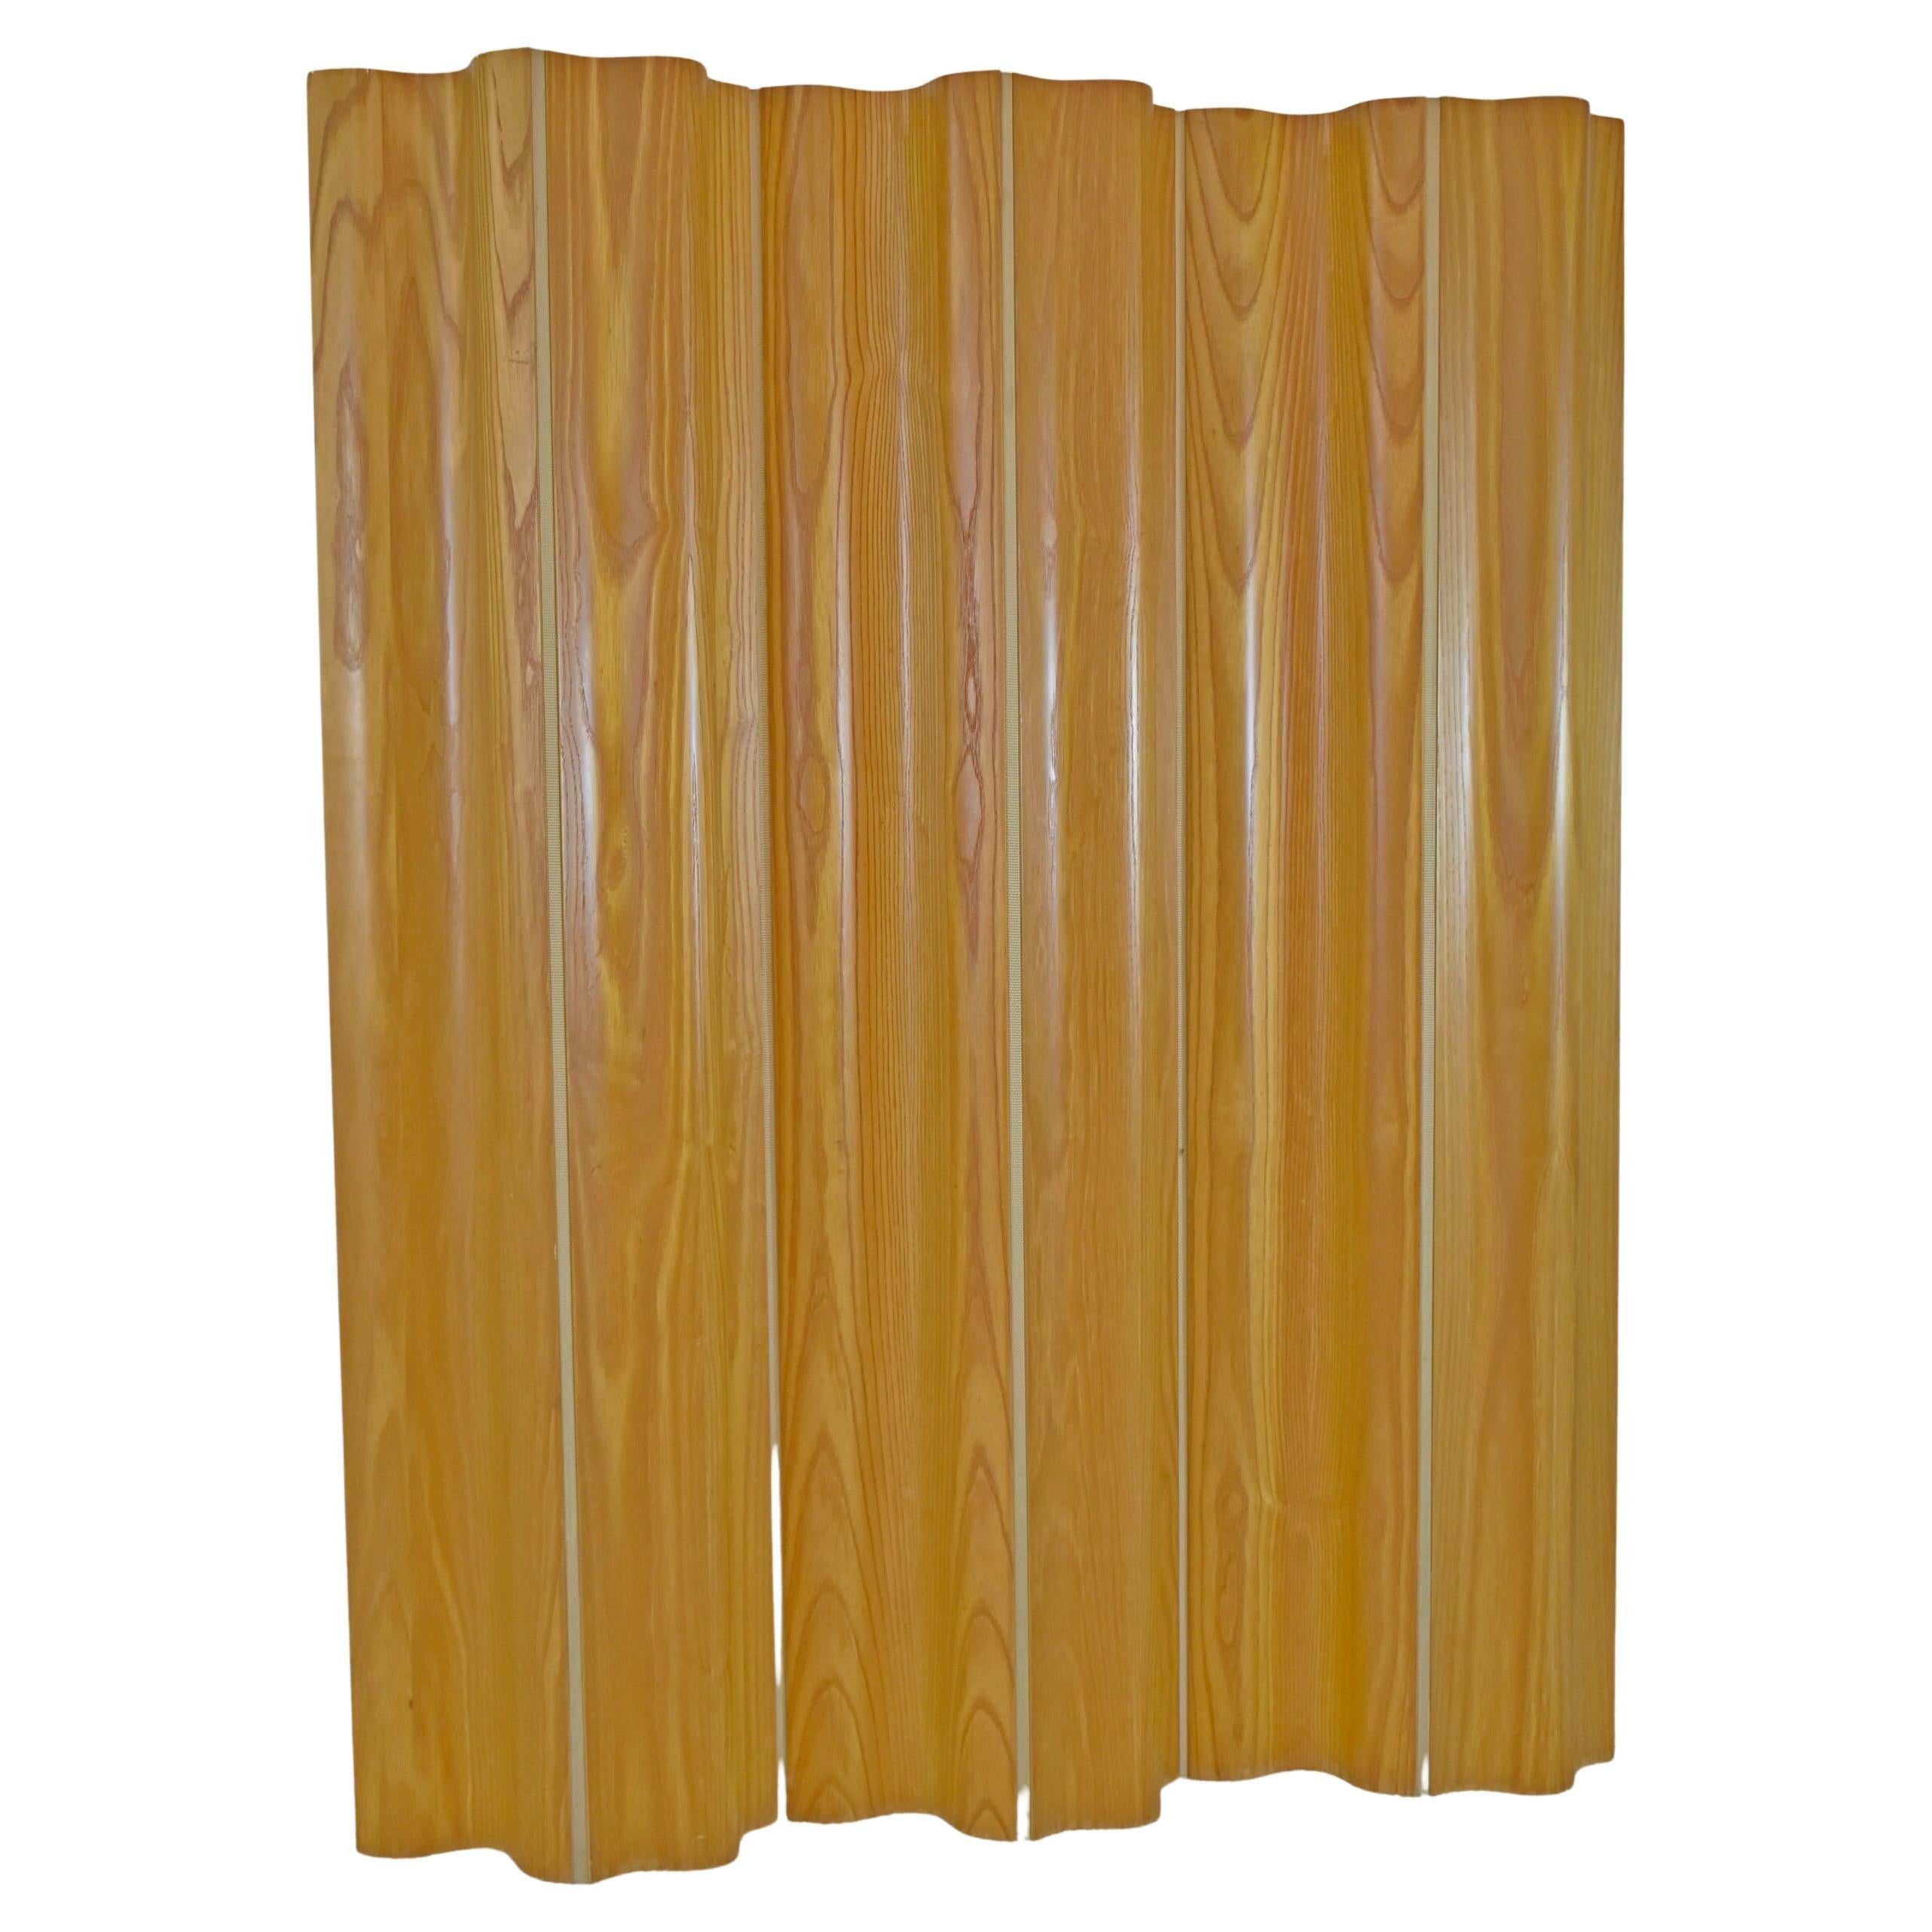 Eames 6 Panel Oak Room Divider by Herman Miller